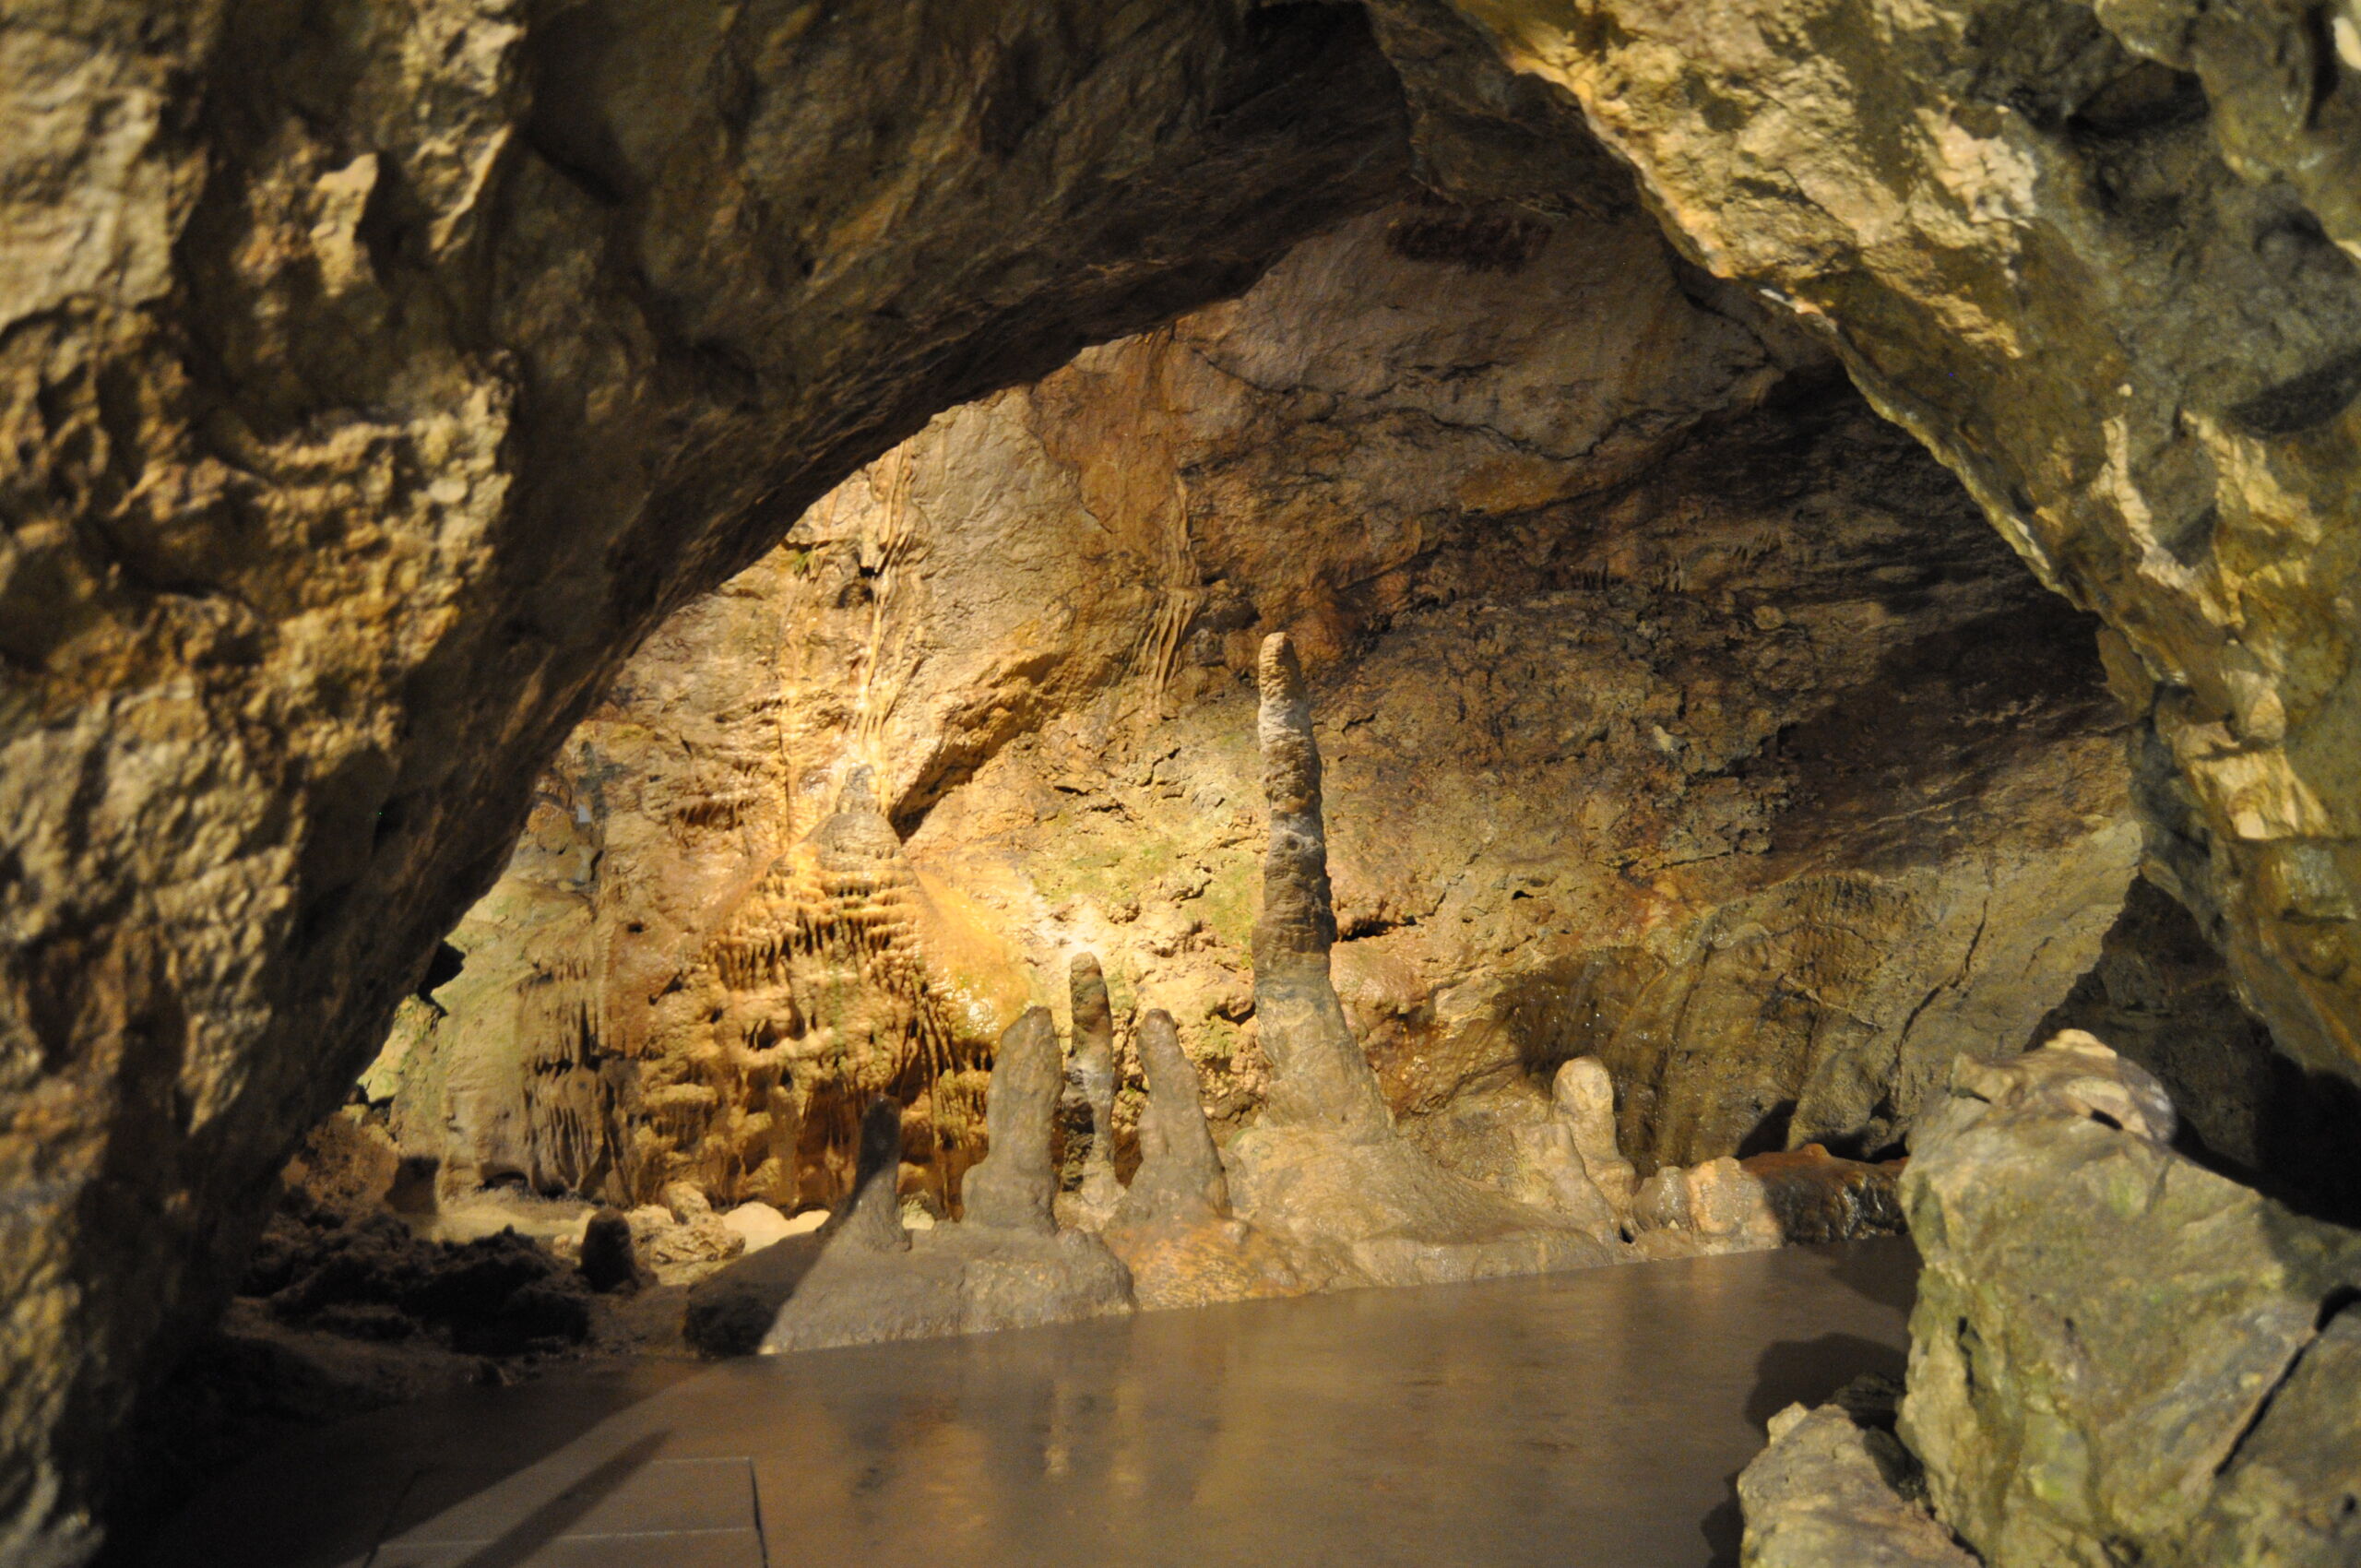 The inside of the Pá-völgyi cave